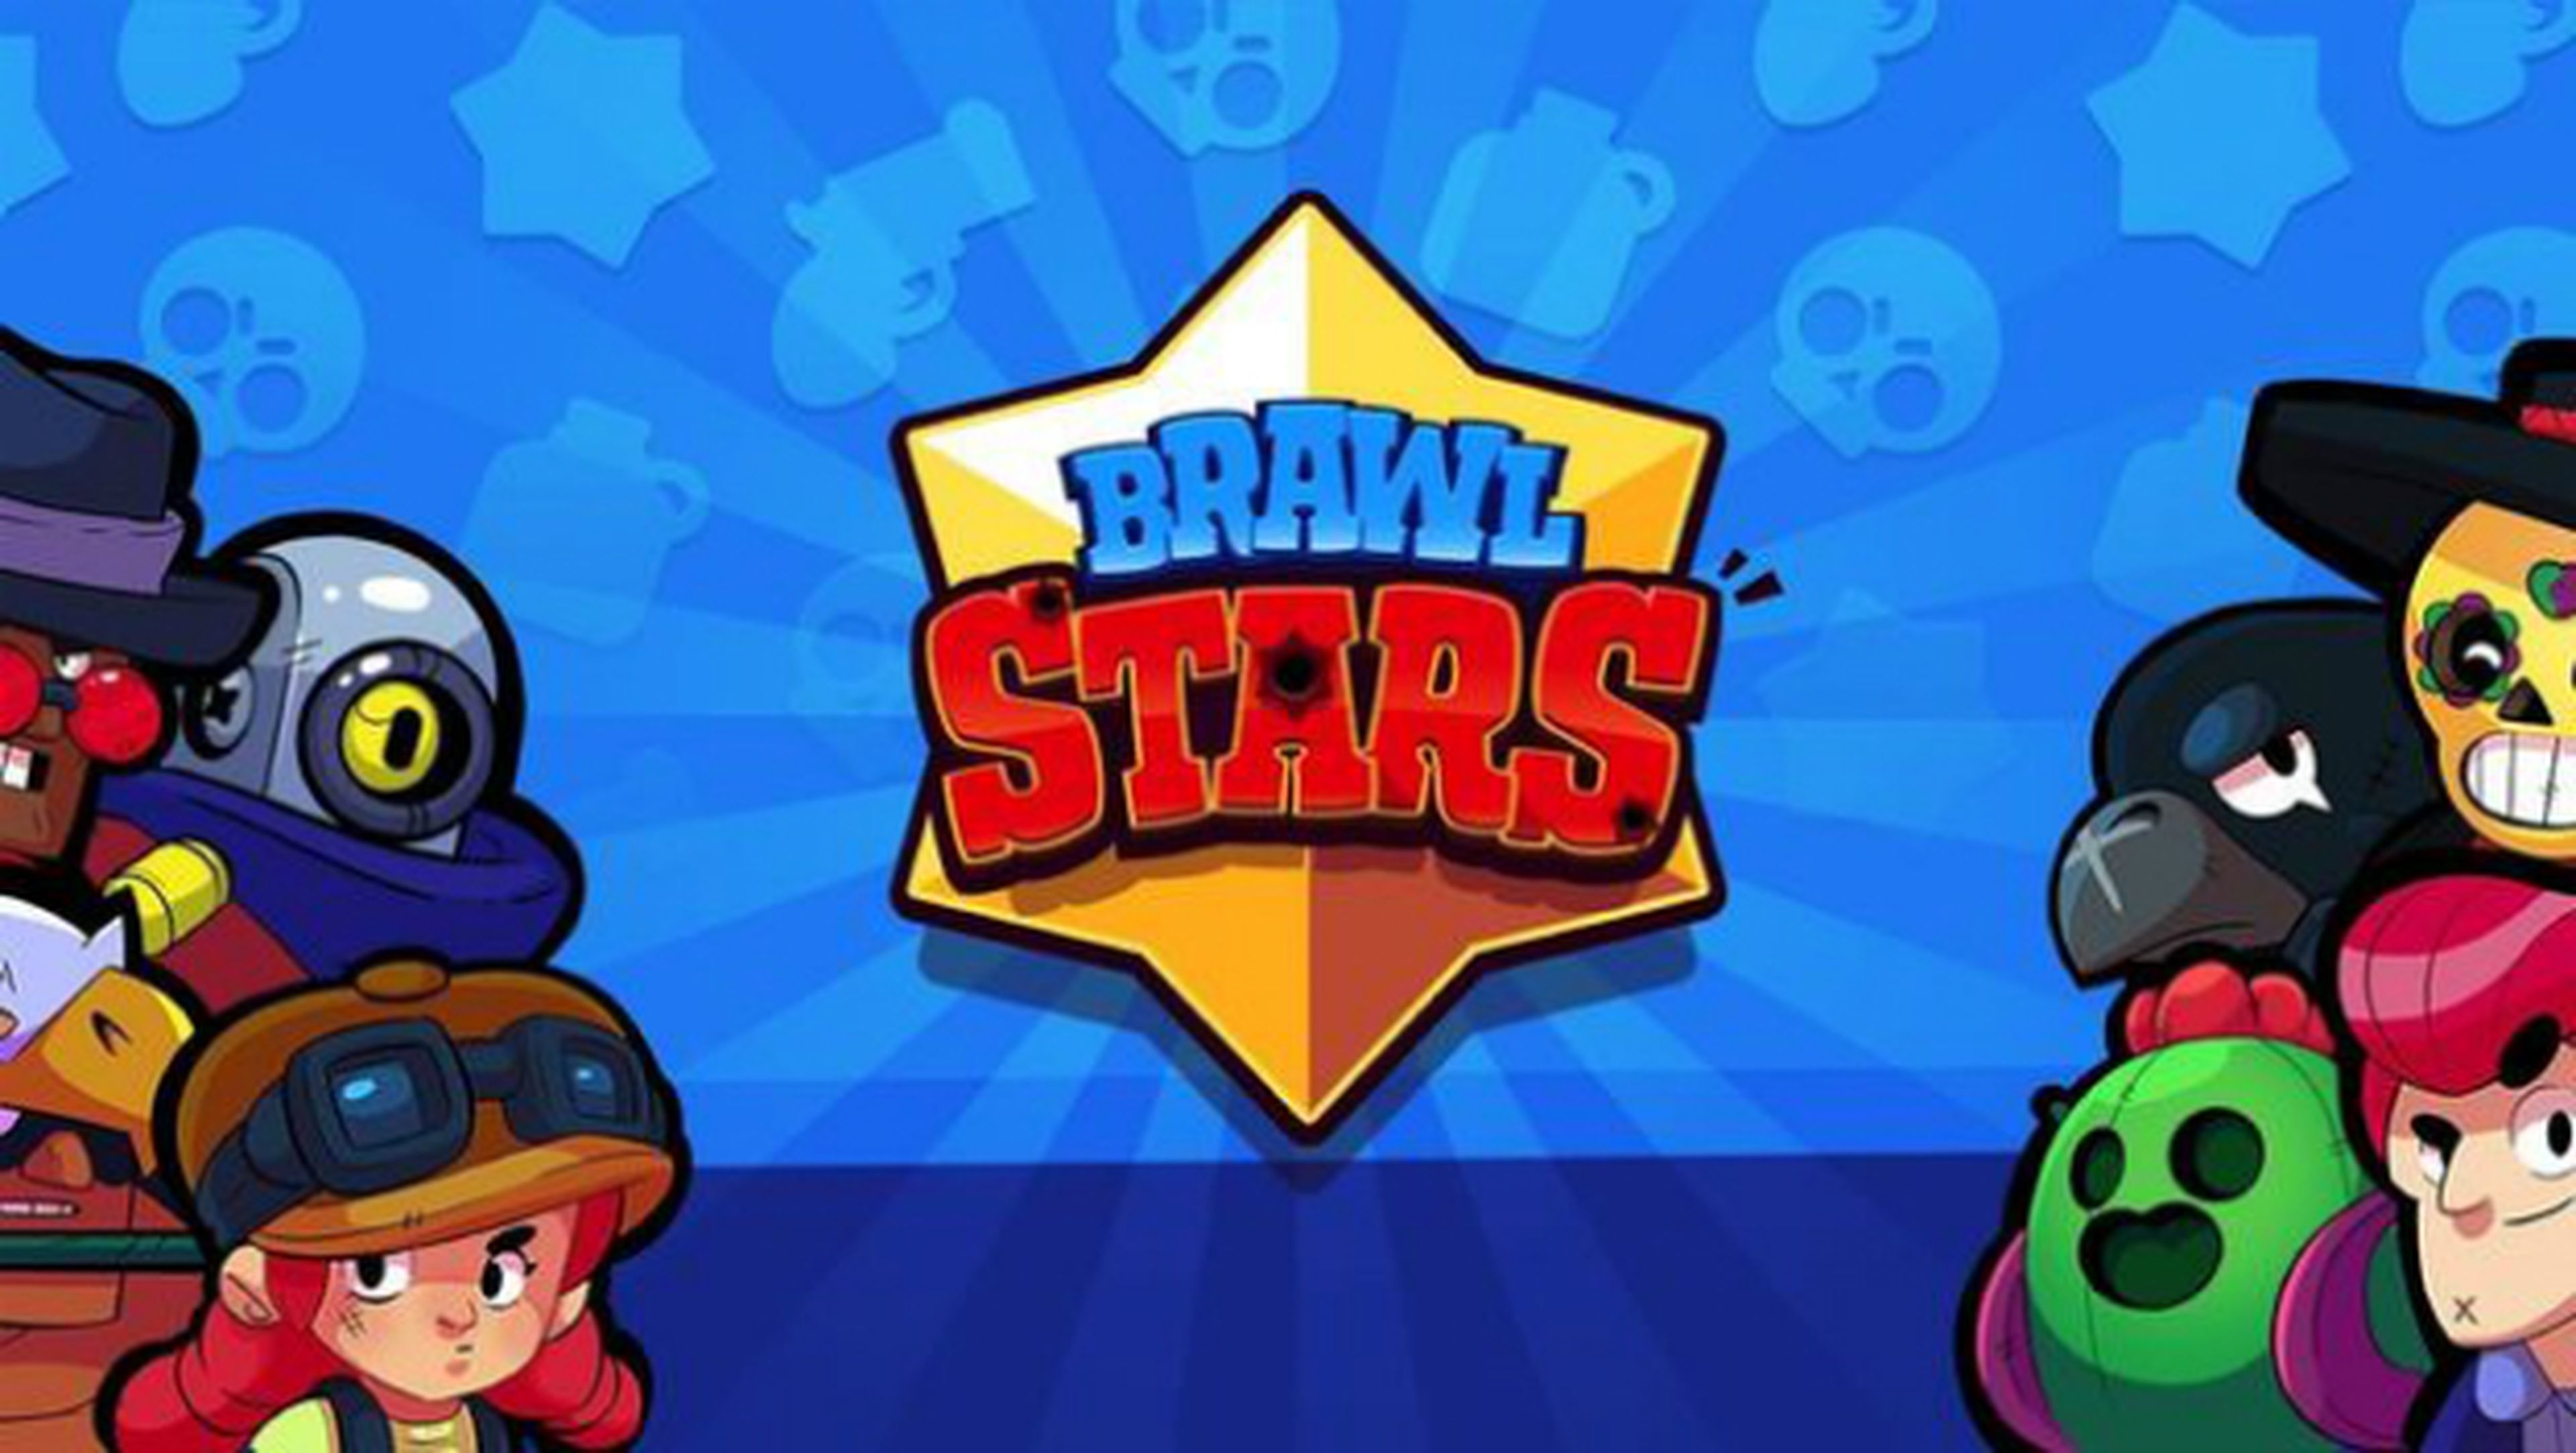 Brawl Stars, un juego como LoL y DOTA 2 para móviles del estudio creador de Clash Royale.